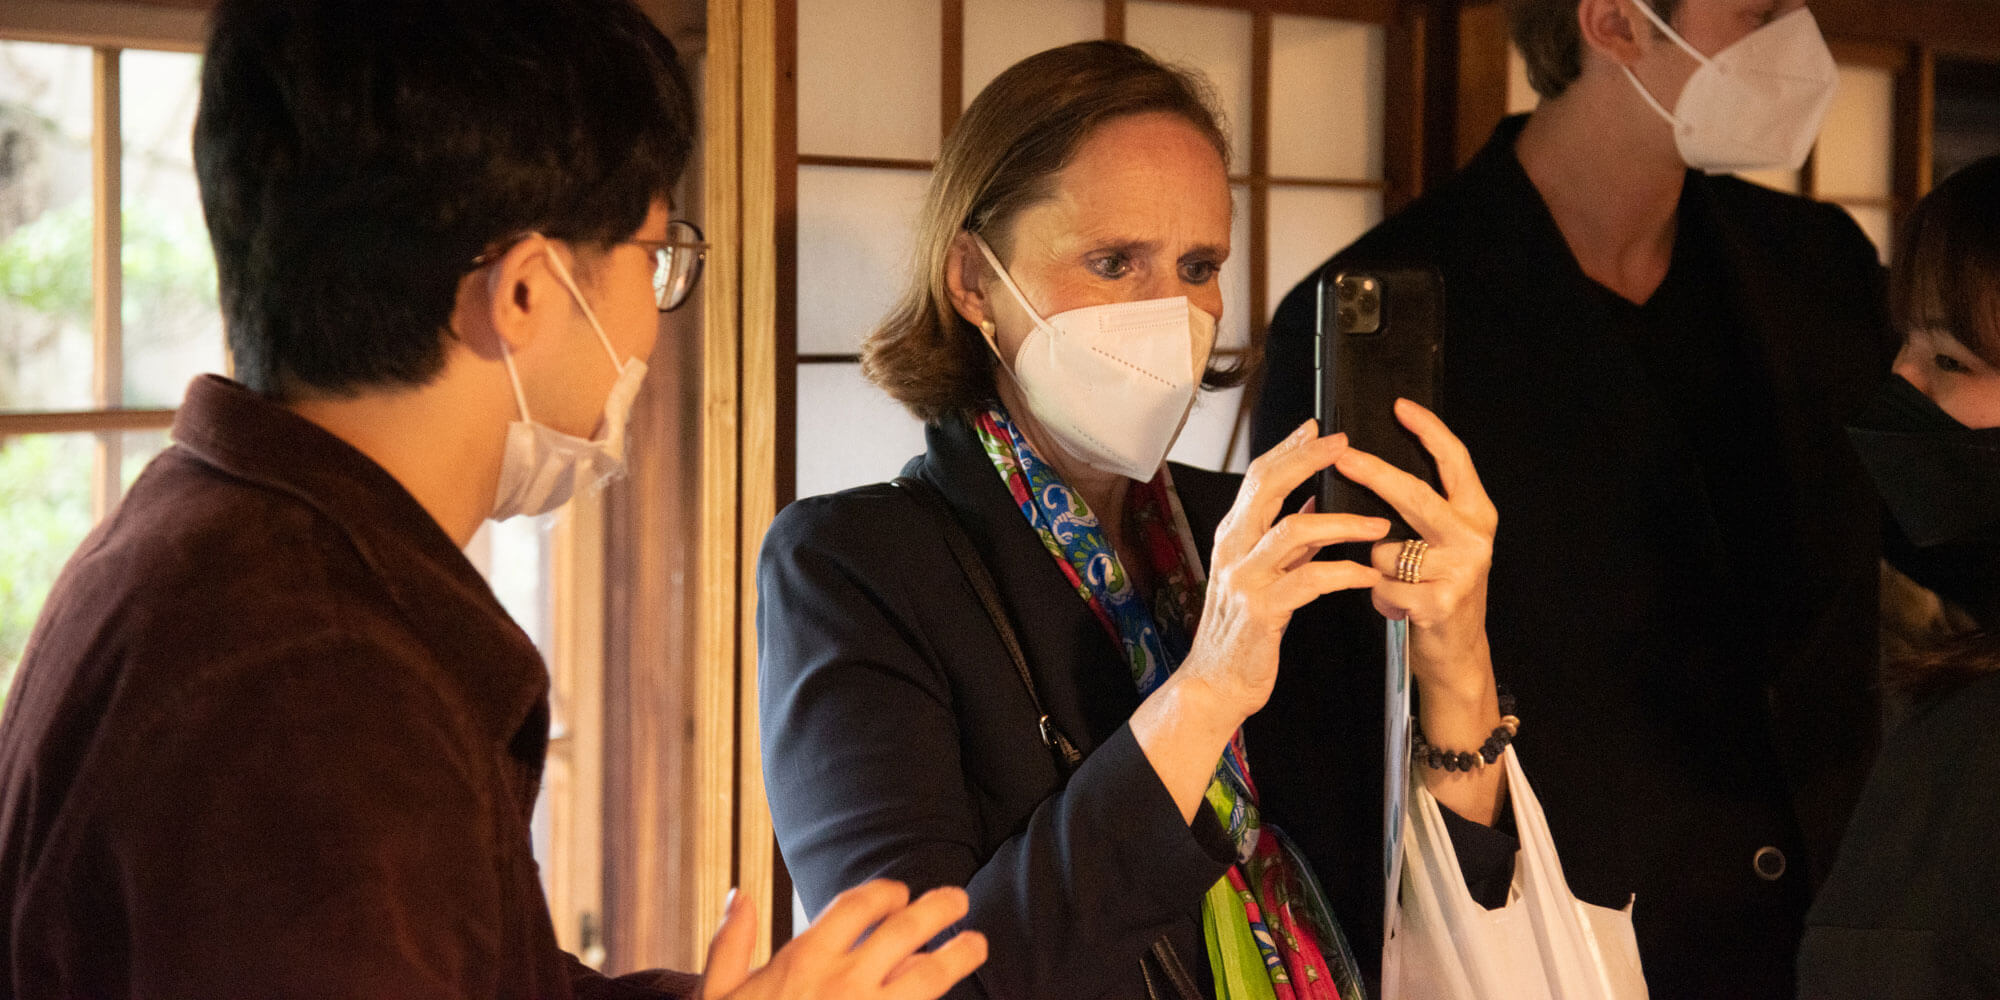 Dr. Elisabeth Bertagnoli, österreichische Botschafterin in Japan, besuchte das Festival und unterhielt sich mit den Künstlern und den lokalen Kreativen, die an bürgergeführten Projekten arbeiten.